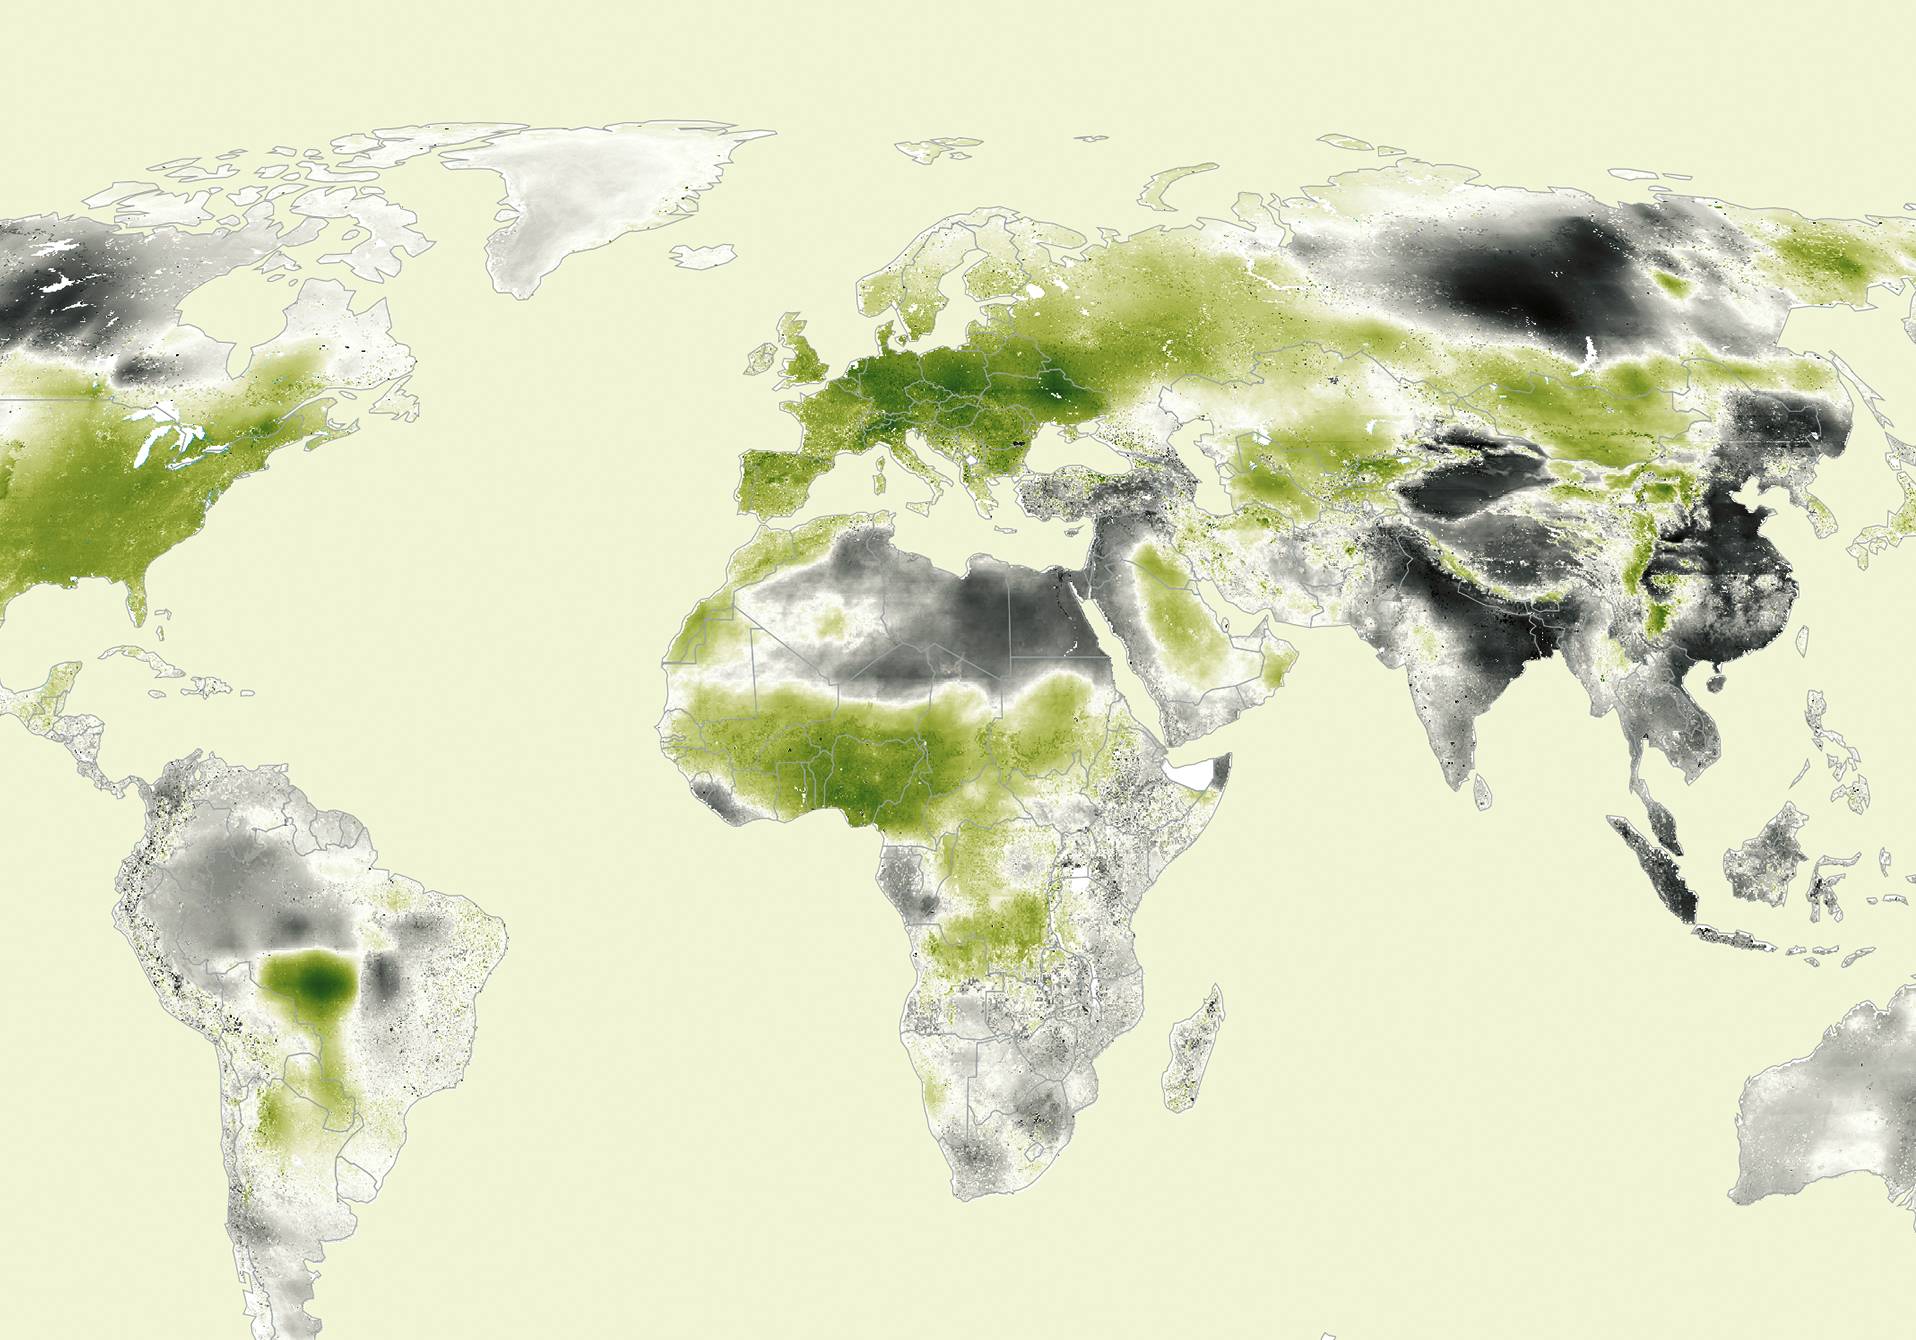 atlas de l'évolution de la pollution aux particules fines dans le monde